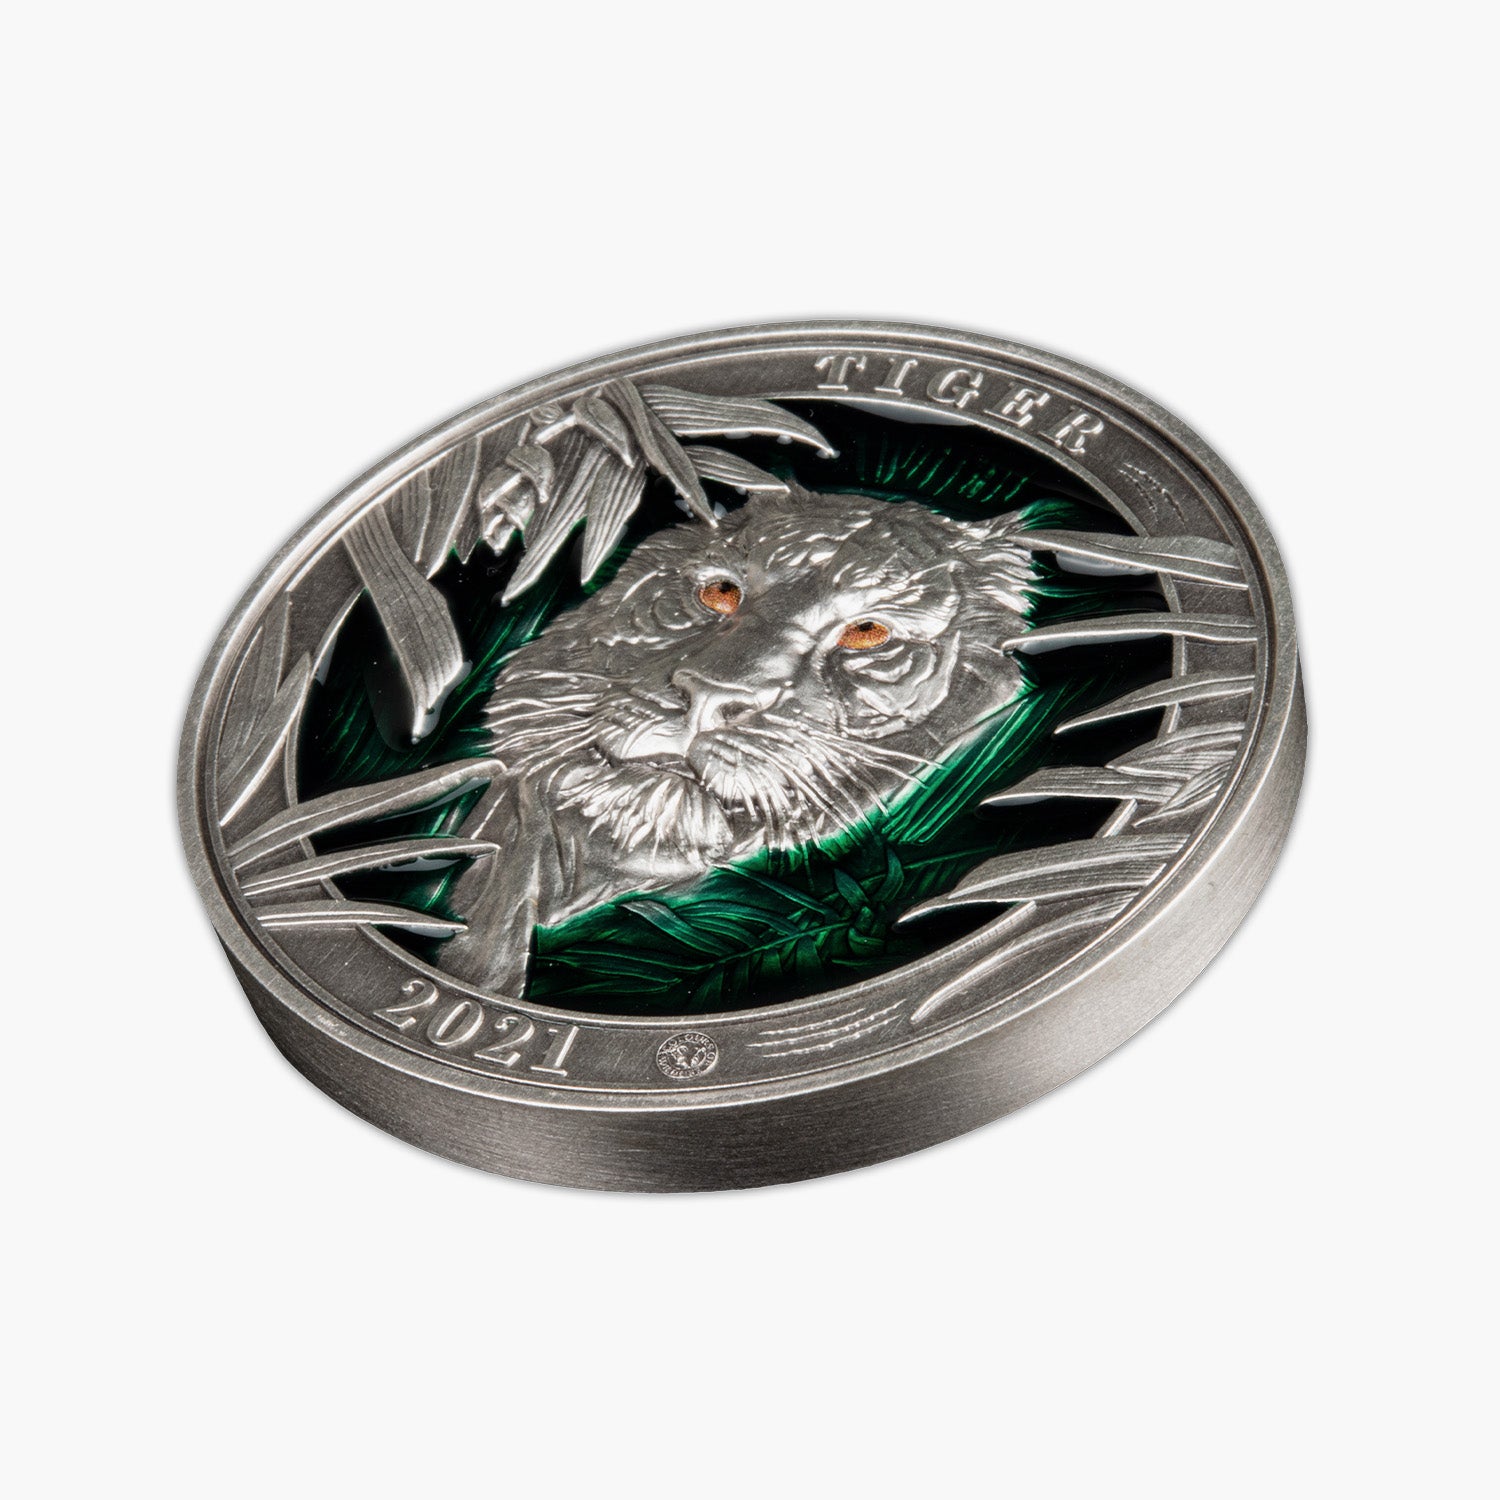 Colours of Wildlife Tiger 3oz Silver Coin